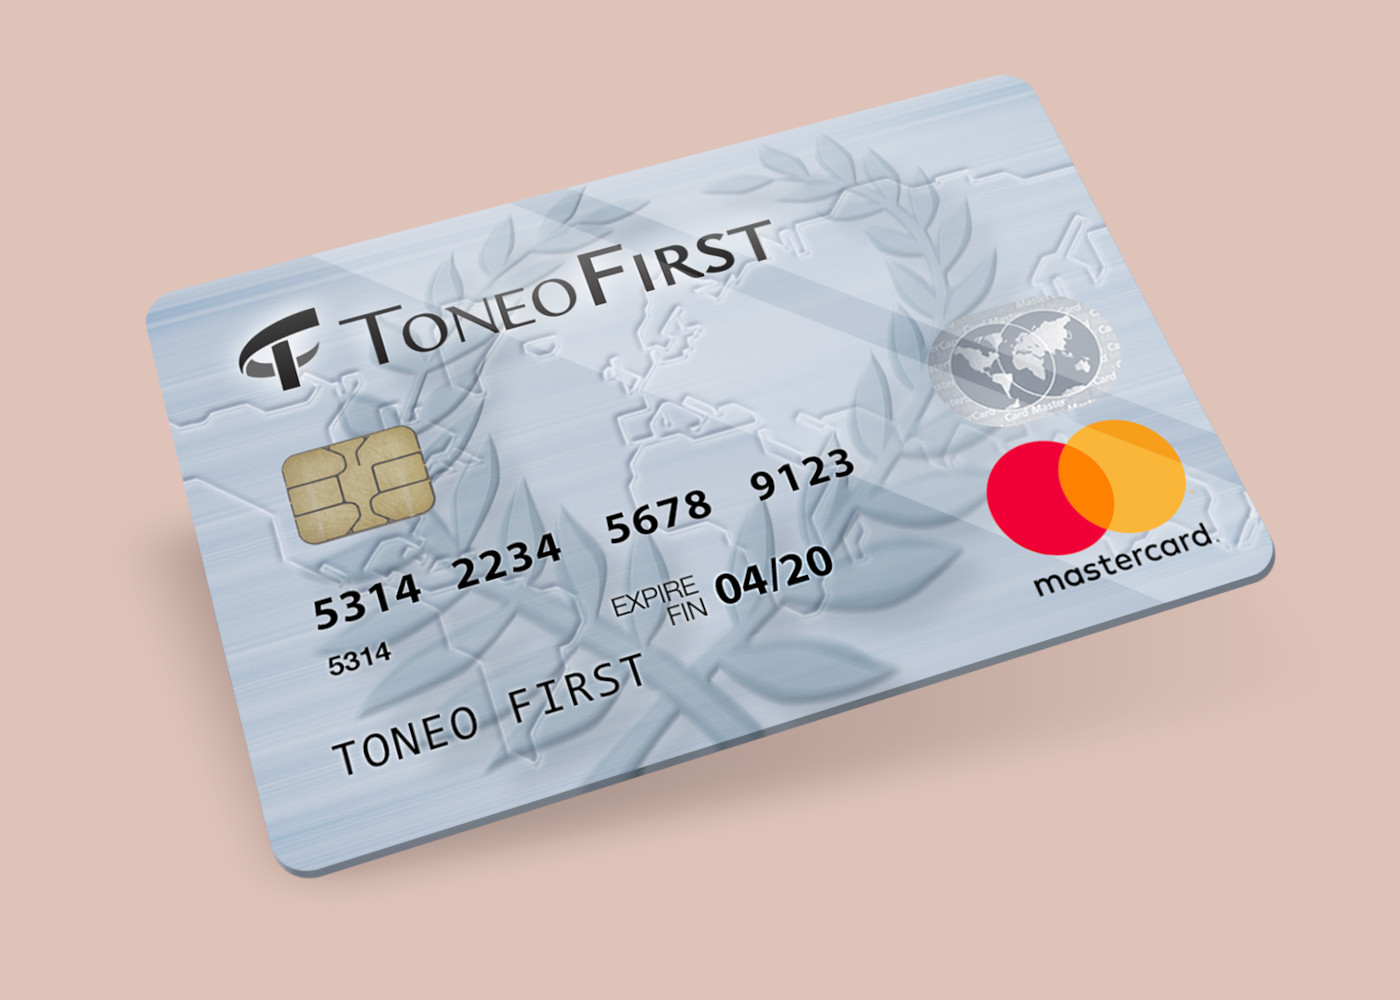 Toneo First Mastercard €15 Gift Card EU 19.63$